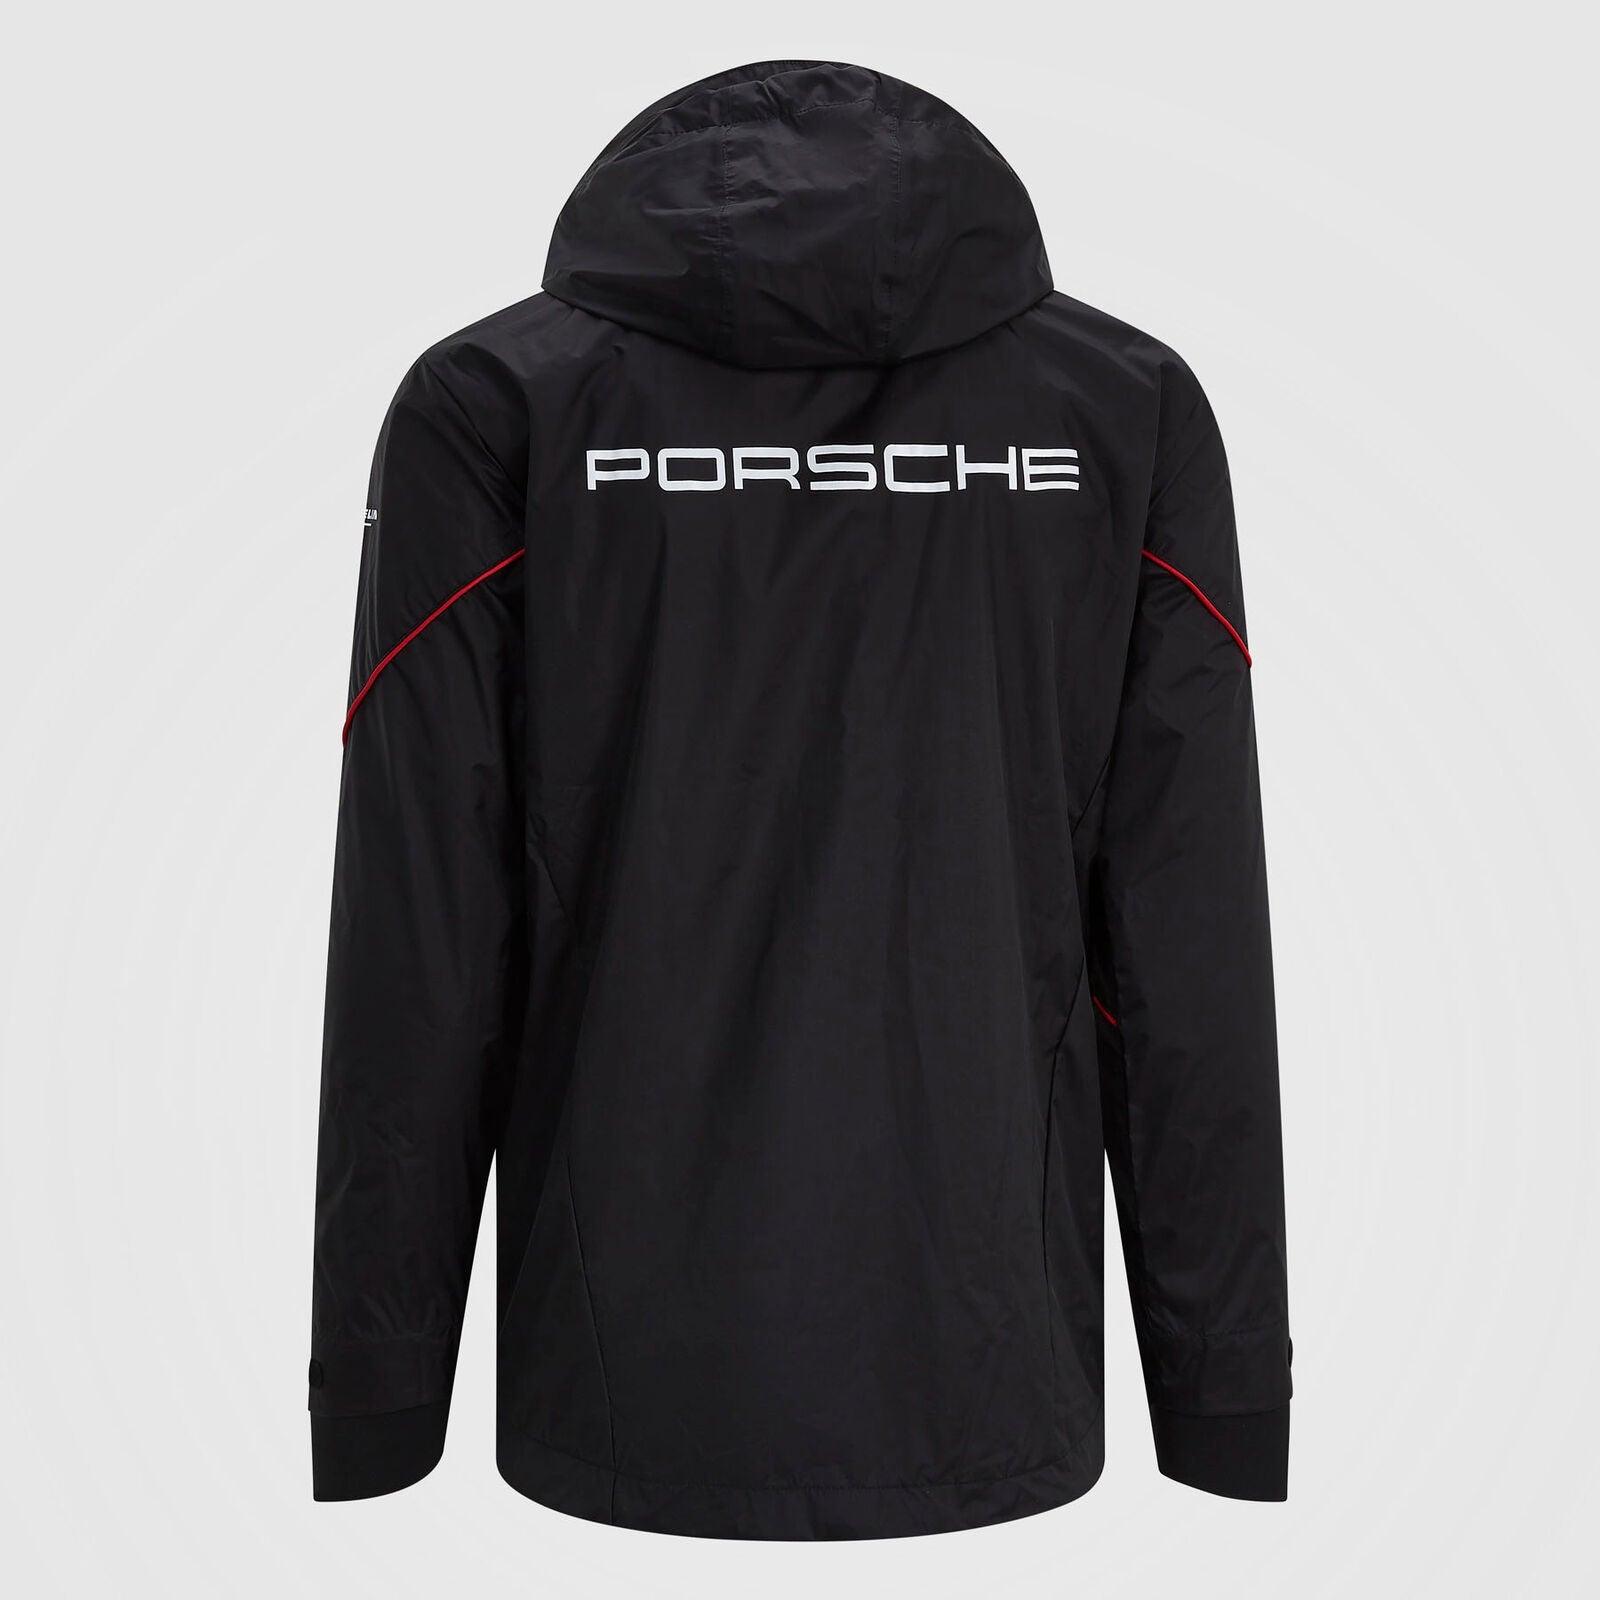 Porsche Motorsport Team Jacket - Rustle Racewears